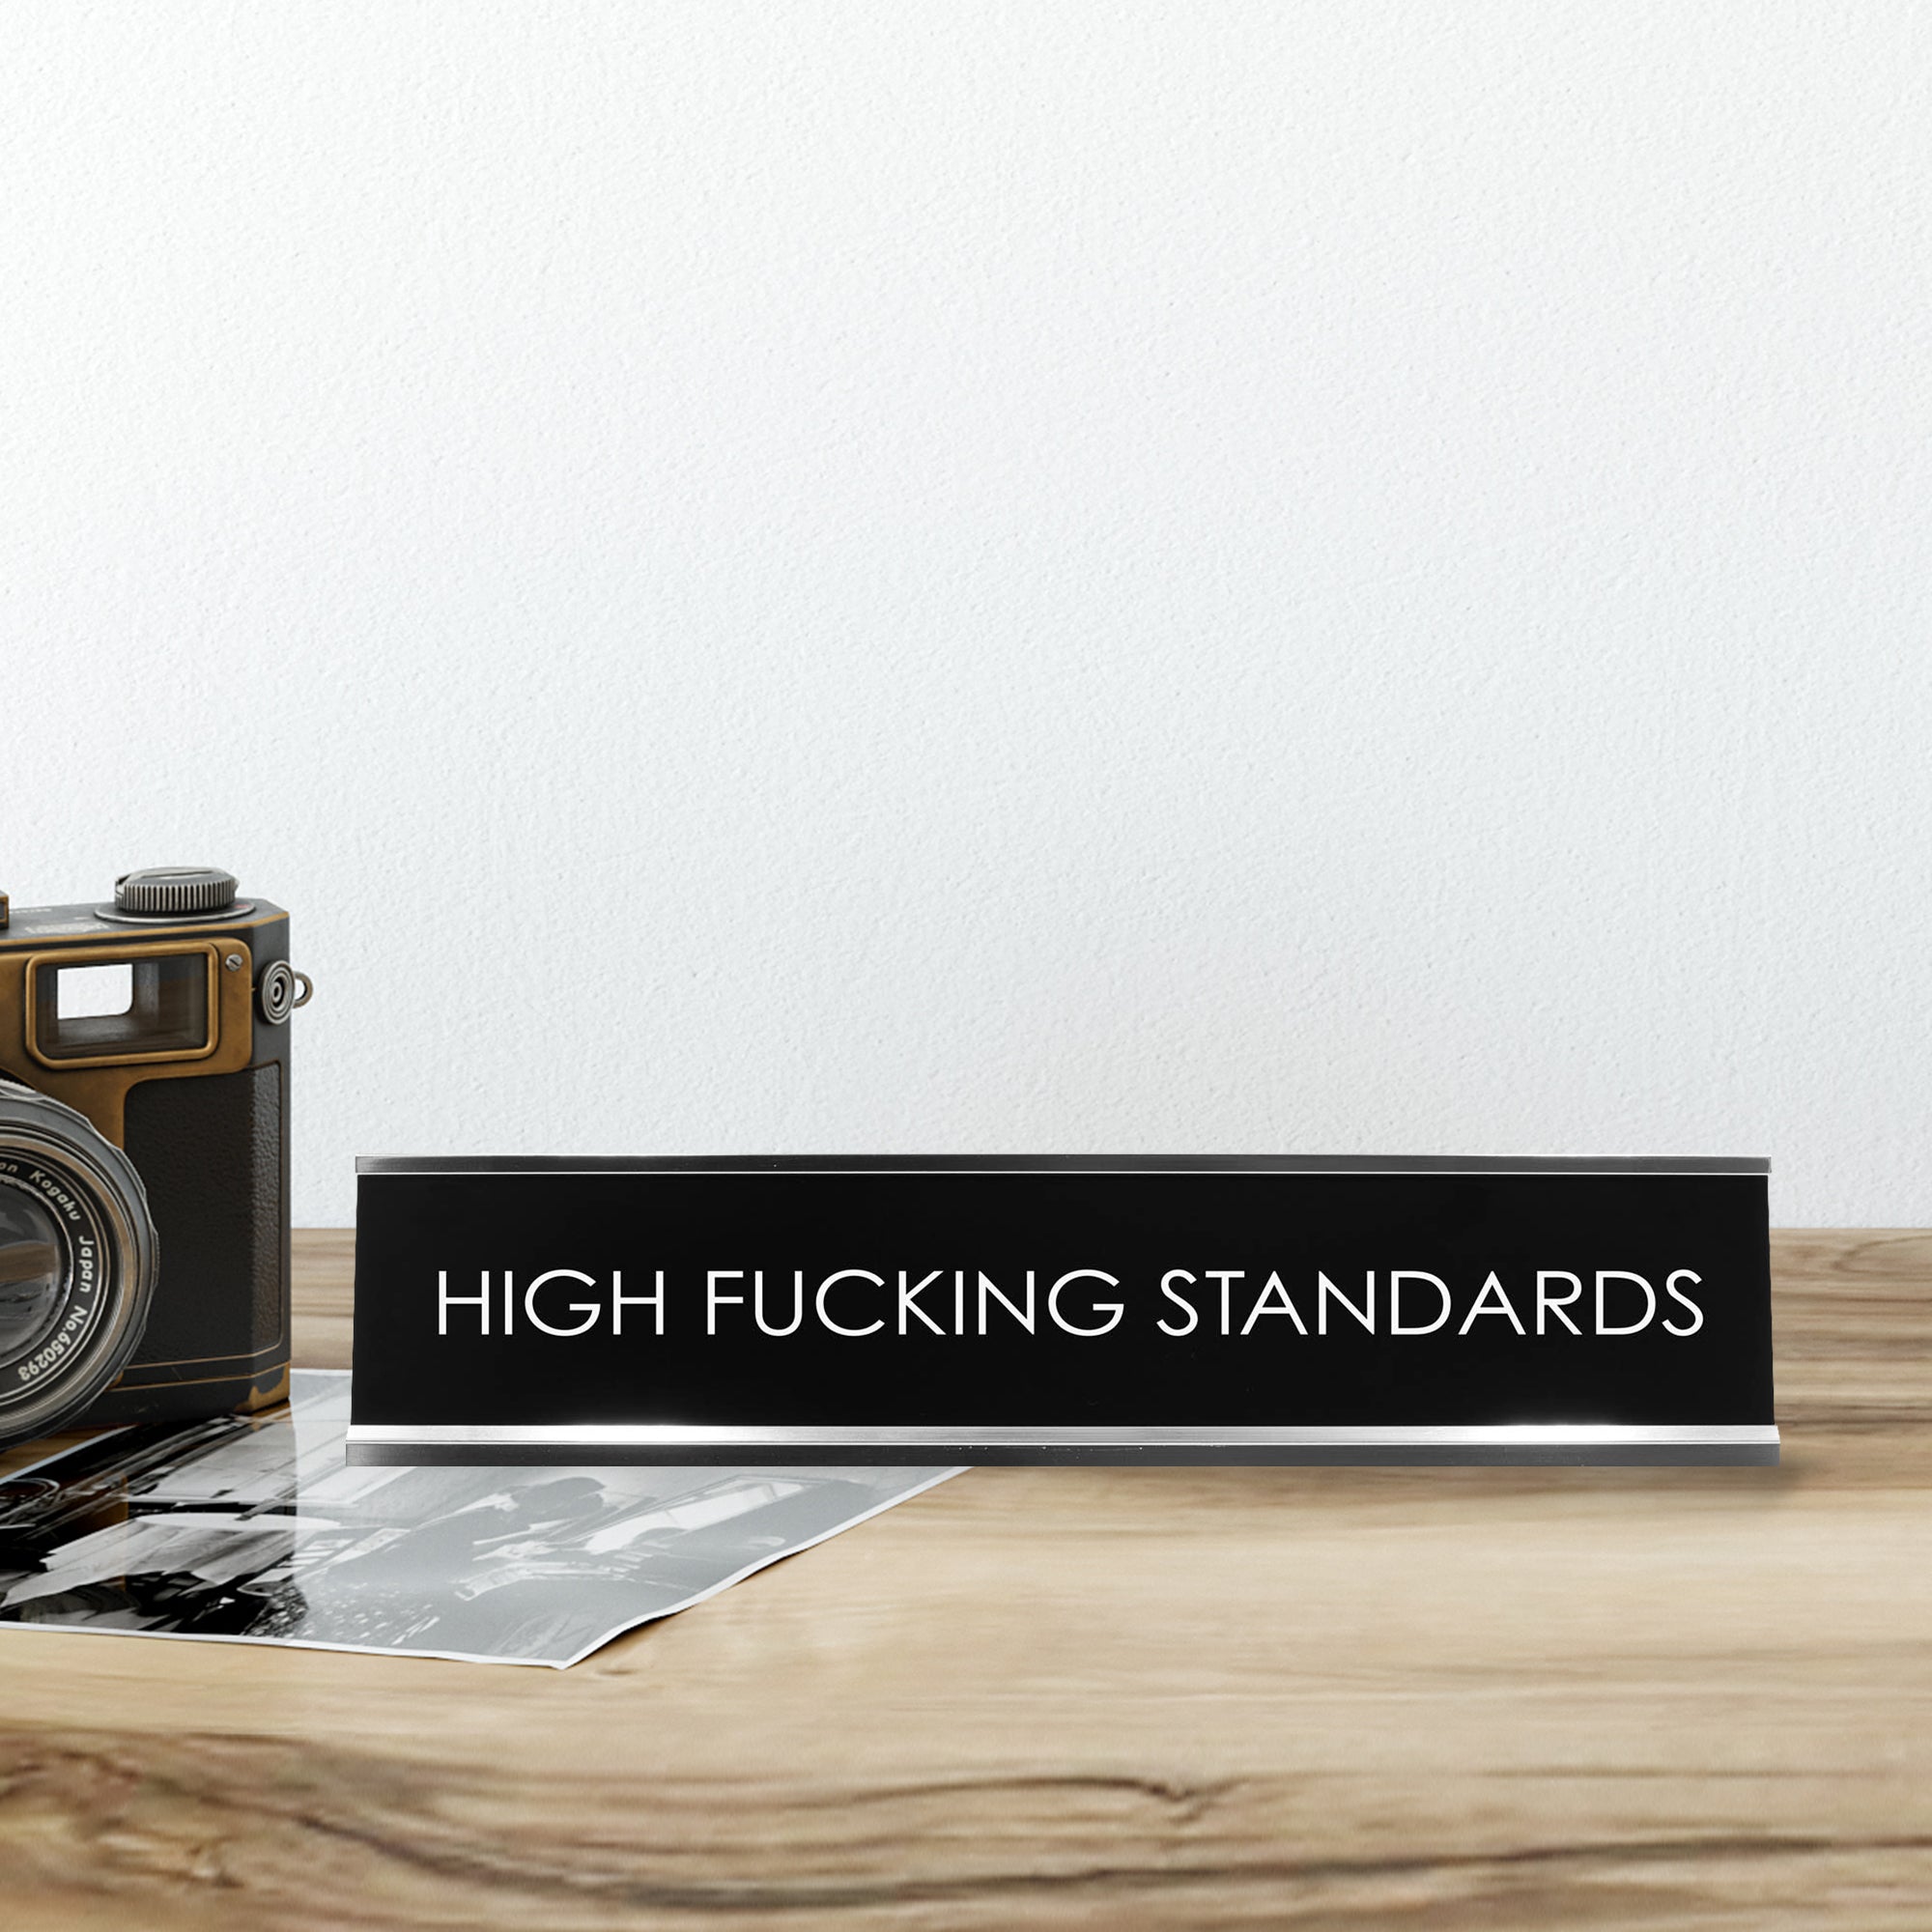 High Fucking Standards Novelty Desk Sign